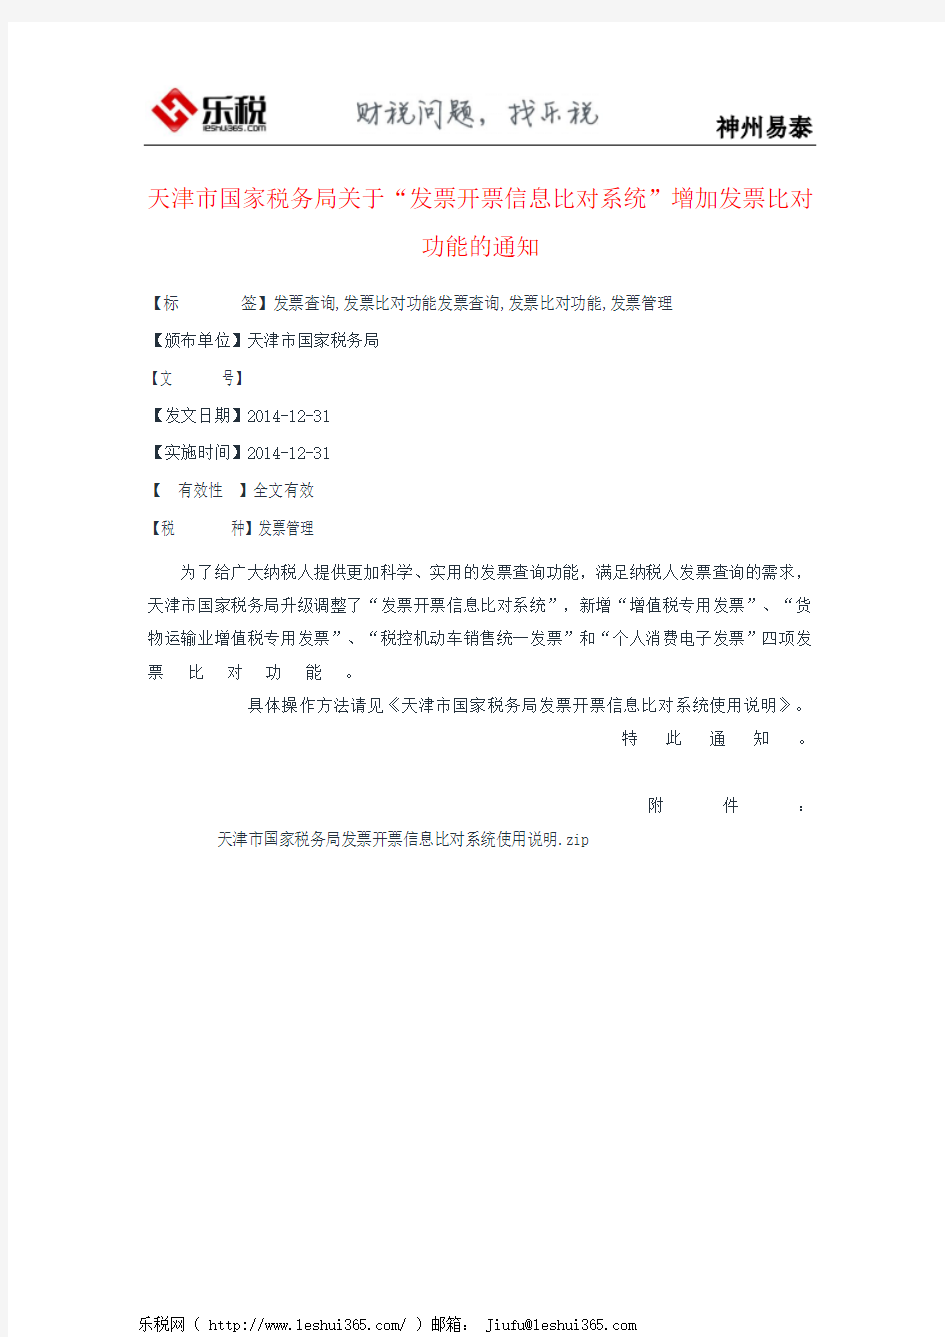 天津市国家税务局关于“发票开票信息比对系统”增加发票比对功能的通知